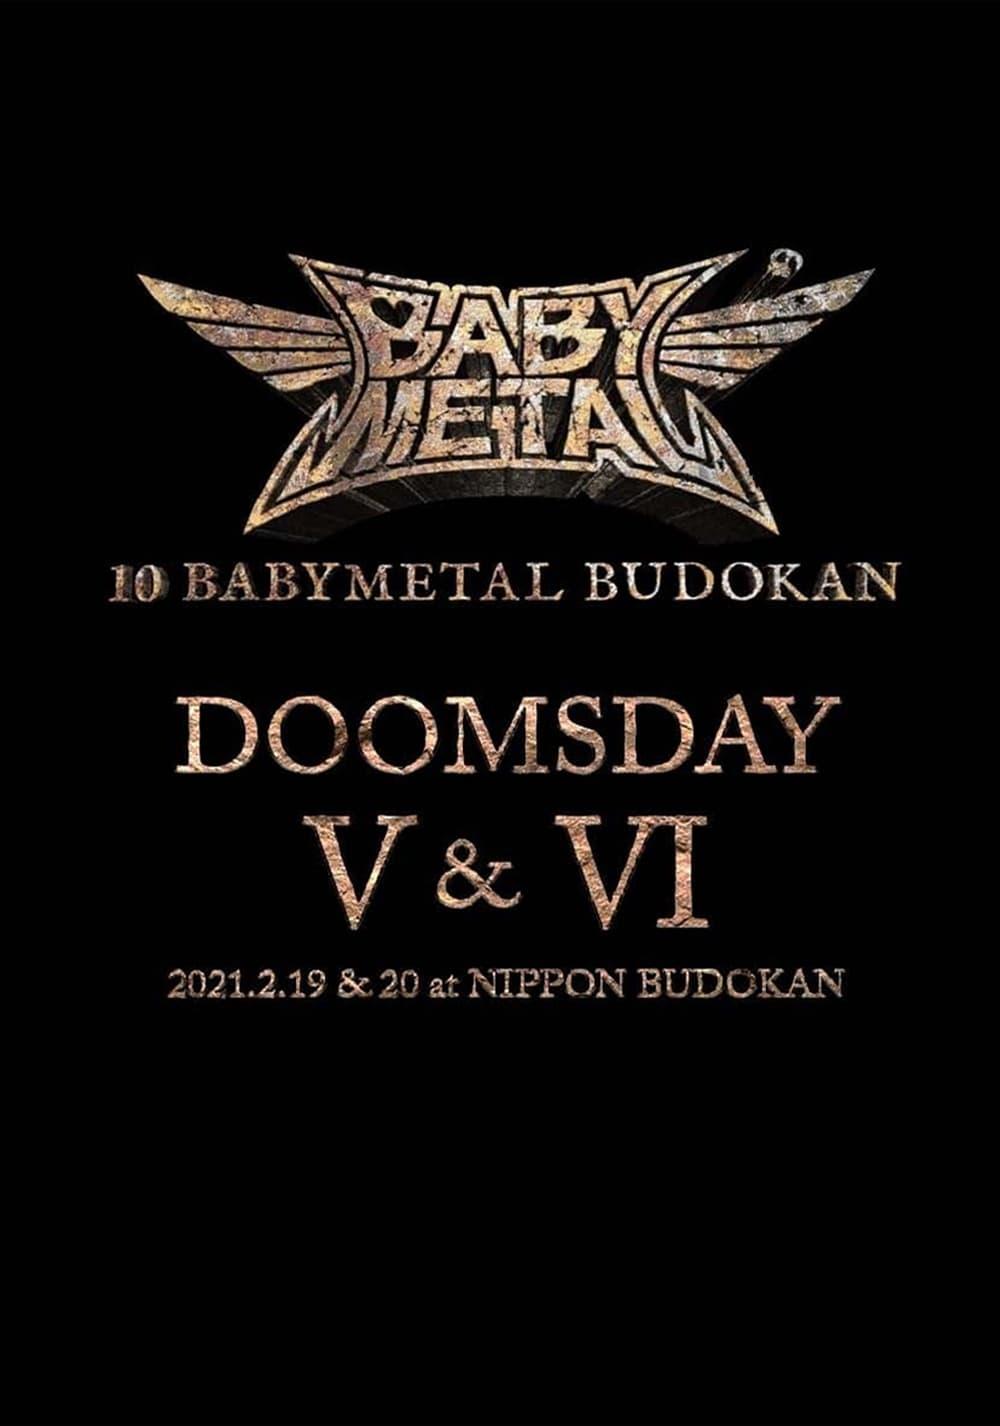 10 BABYMETAL BUDOKAN - DOOMSDAY V & VI poster